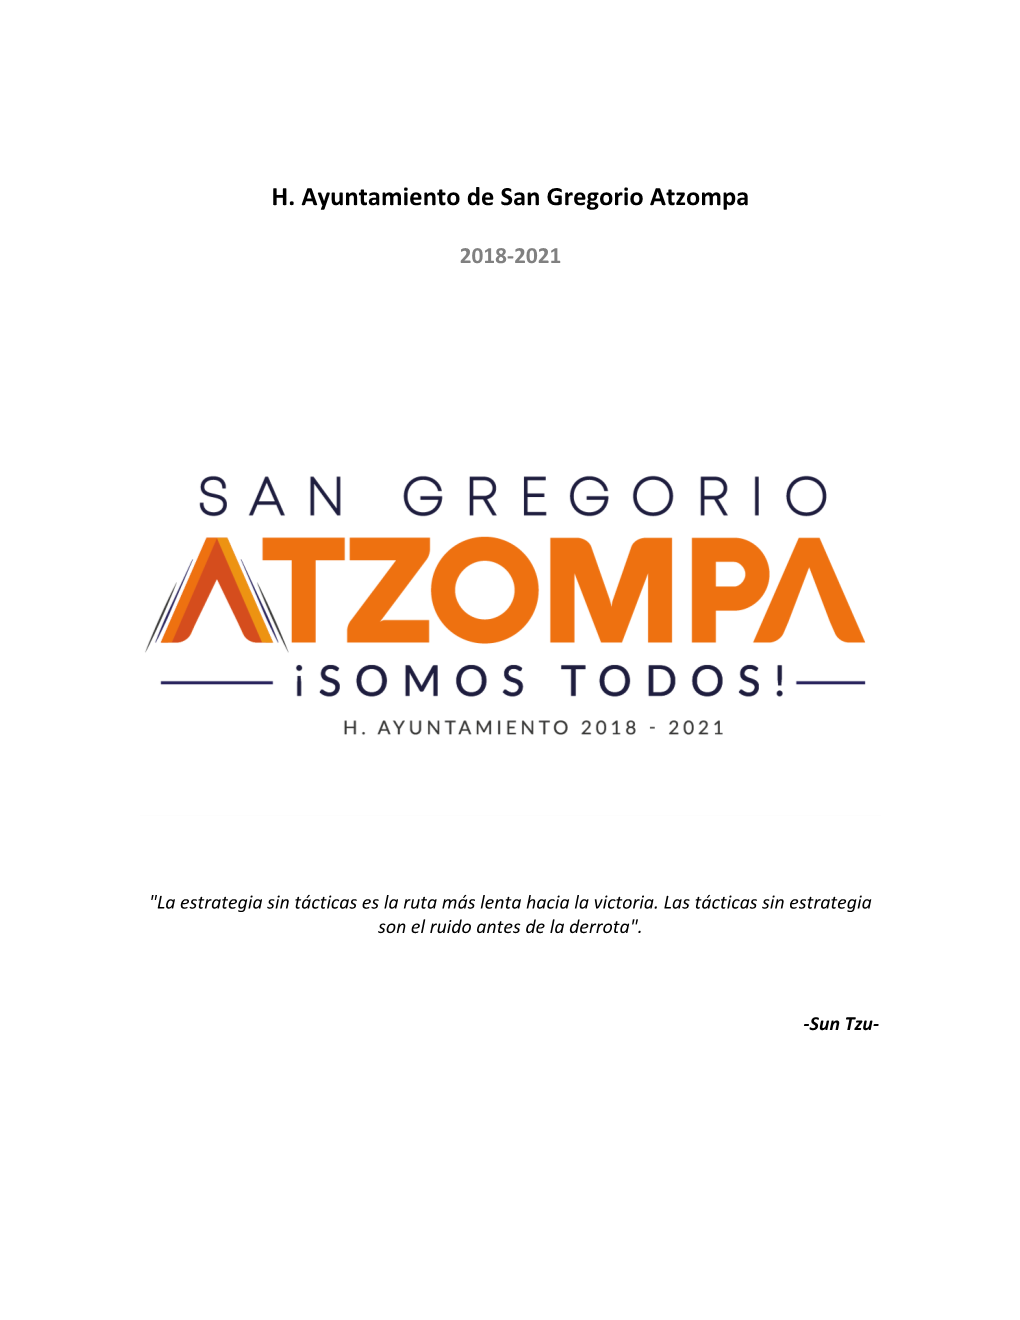 H. Ayuntamiento De San Gregorio Atzompa